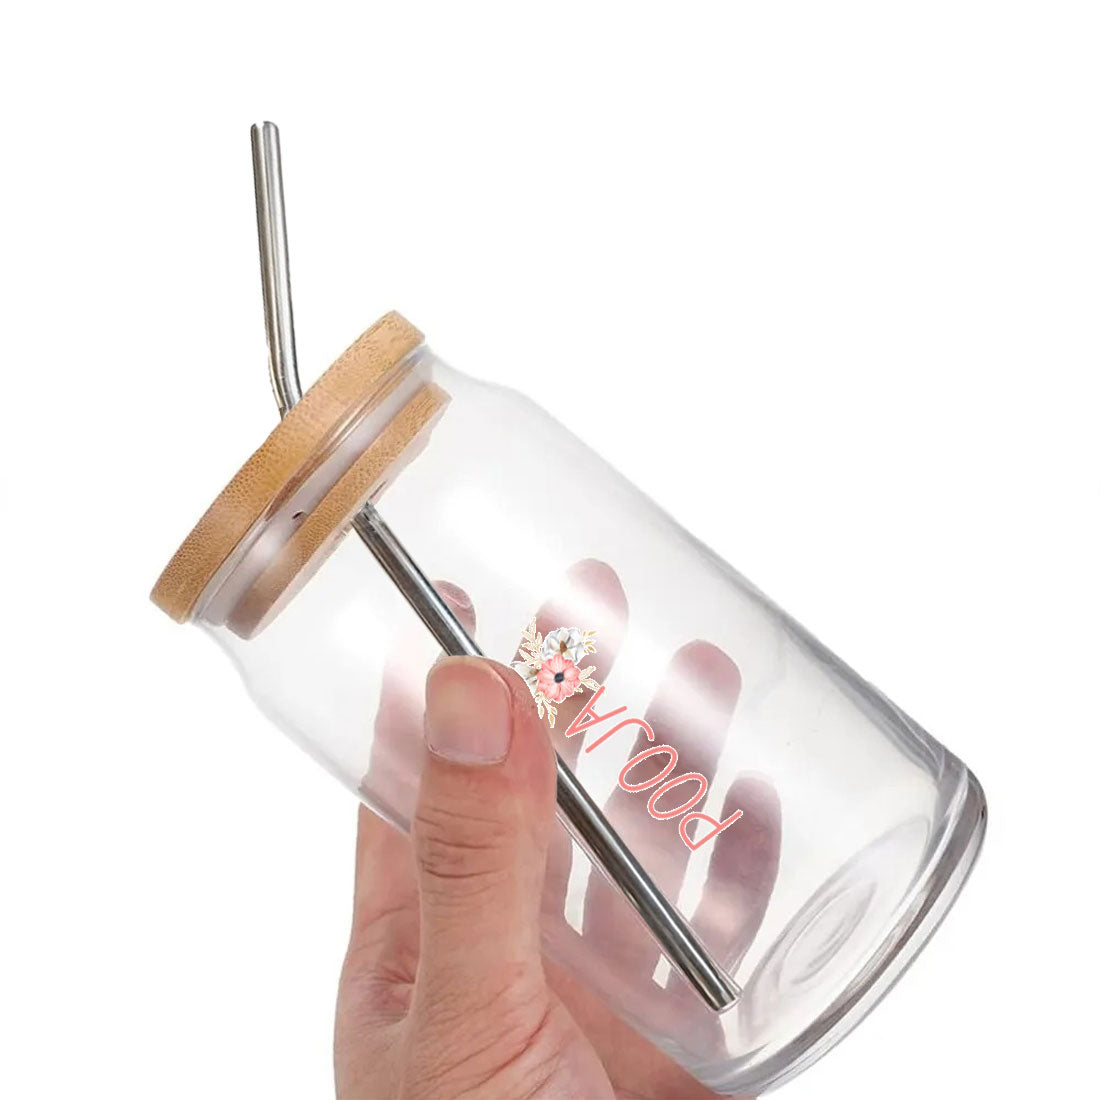 Nutcase Glass Juice Jar with Straw - Custom Can Glass with Metal Straw